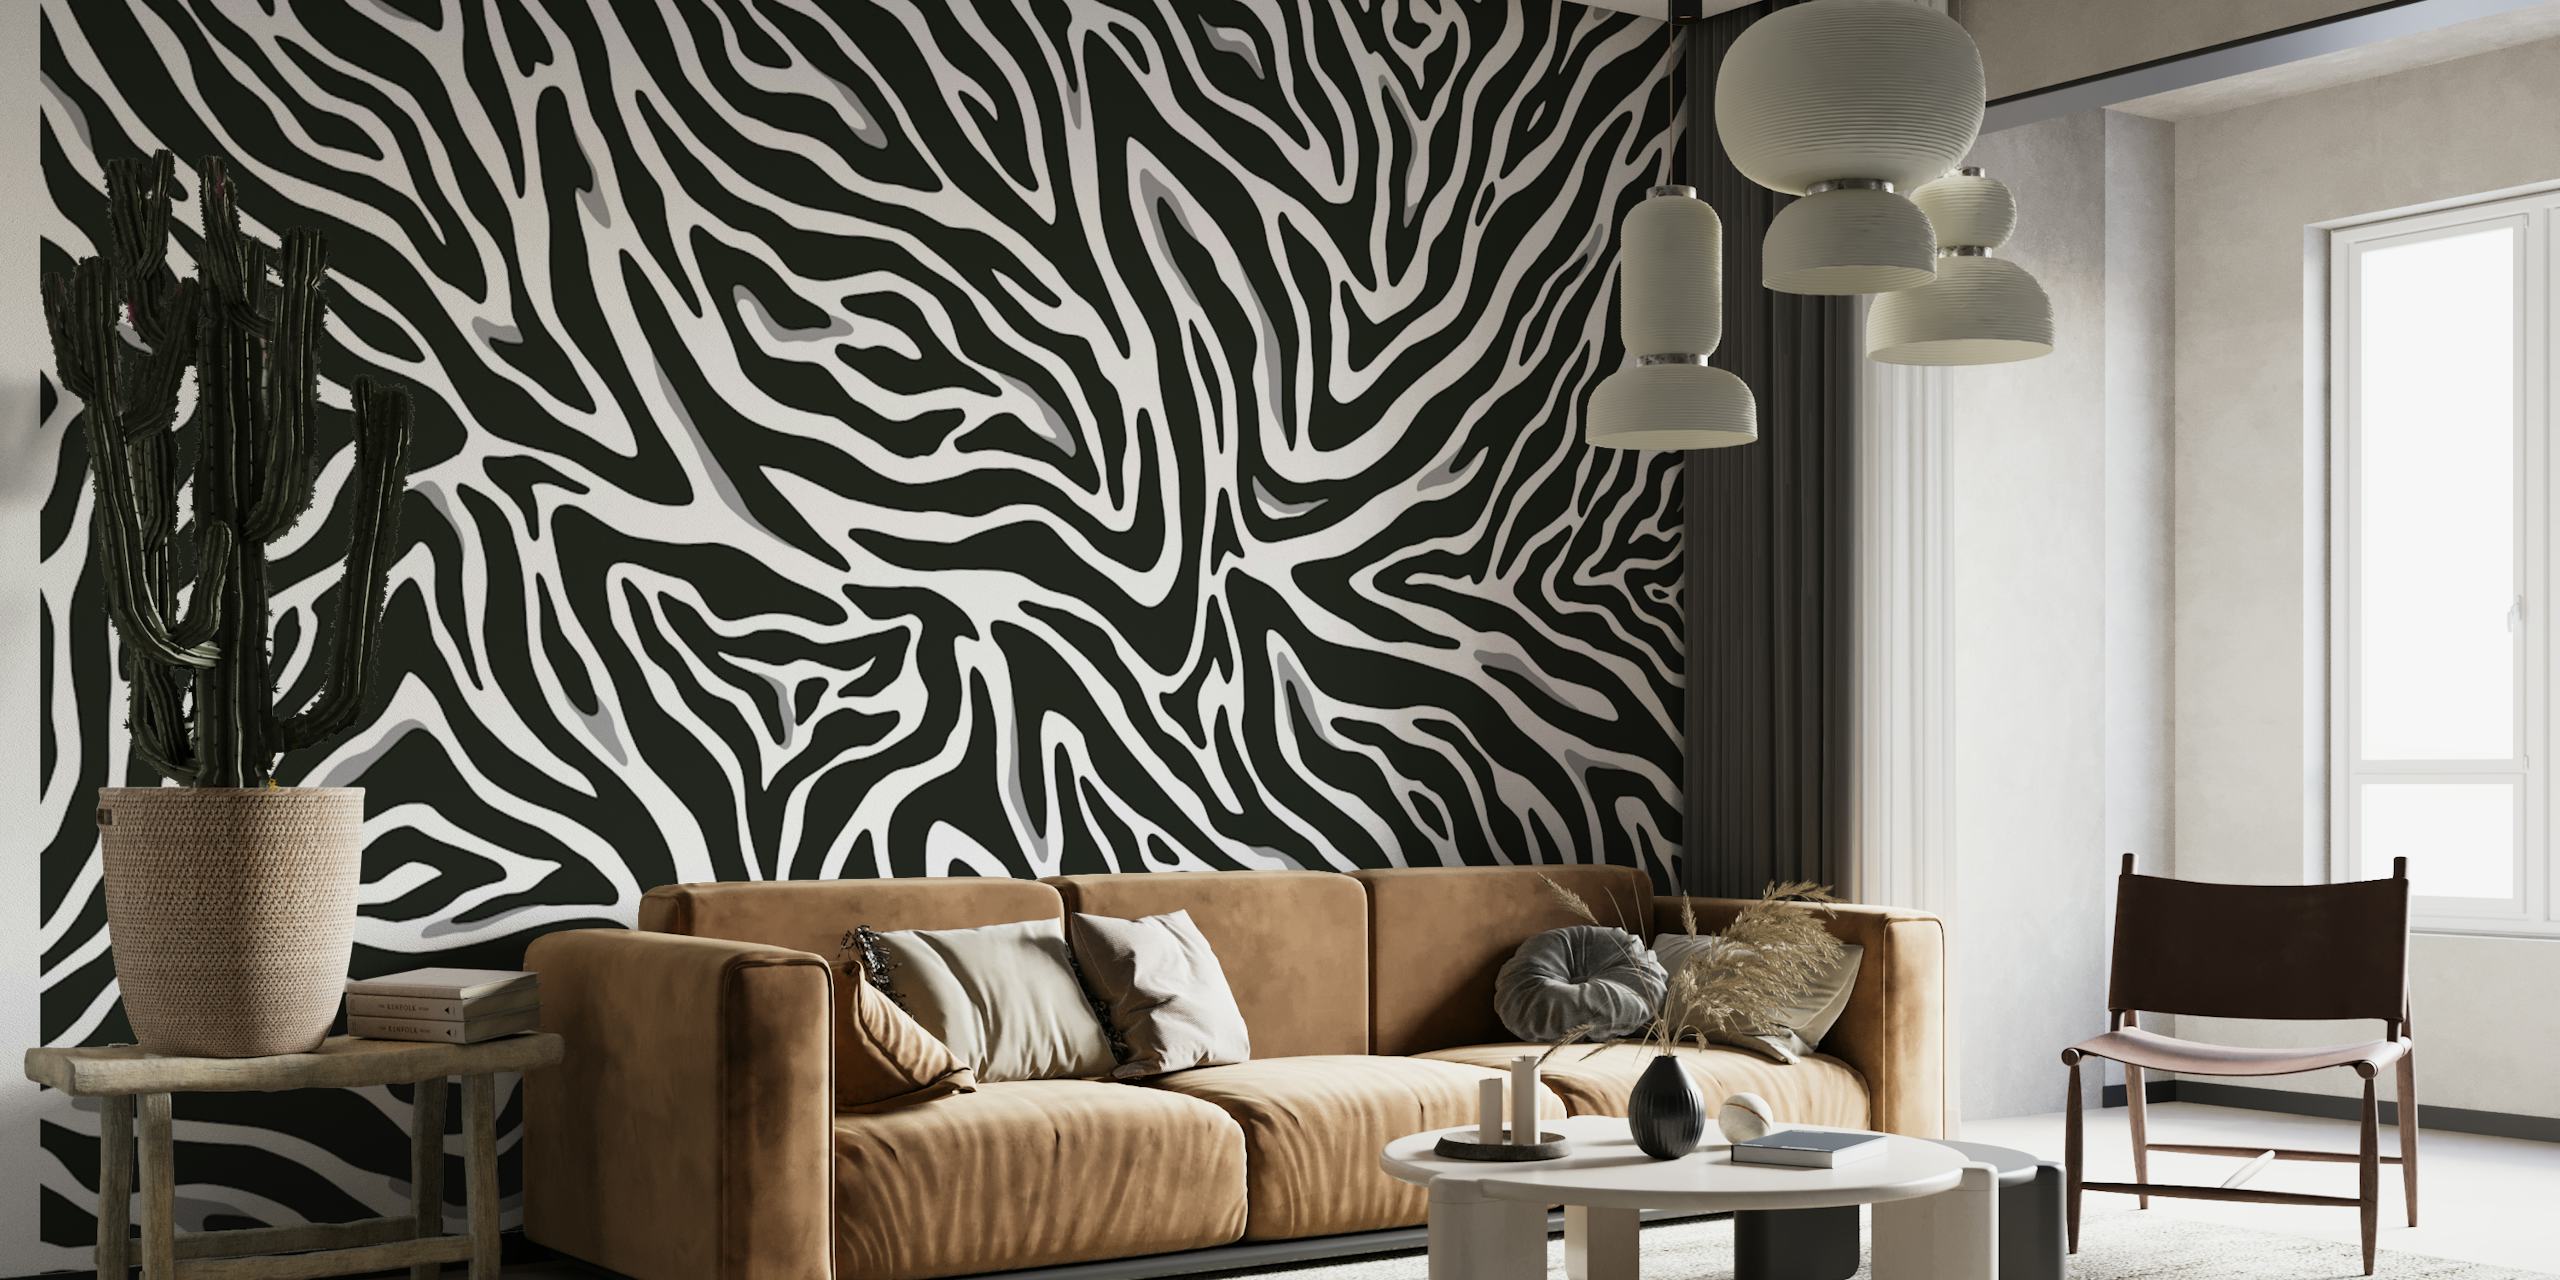 Zebra pattern II behang